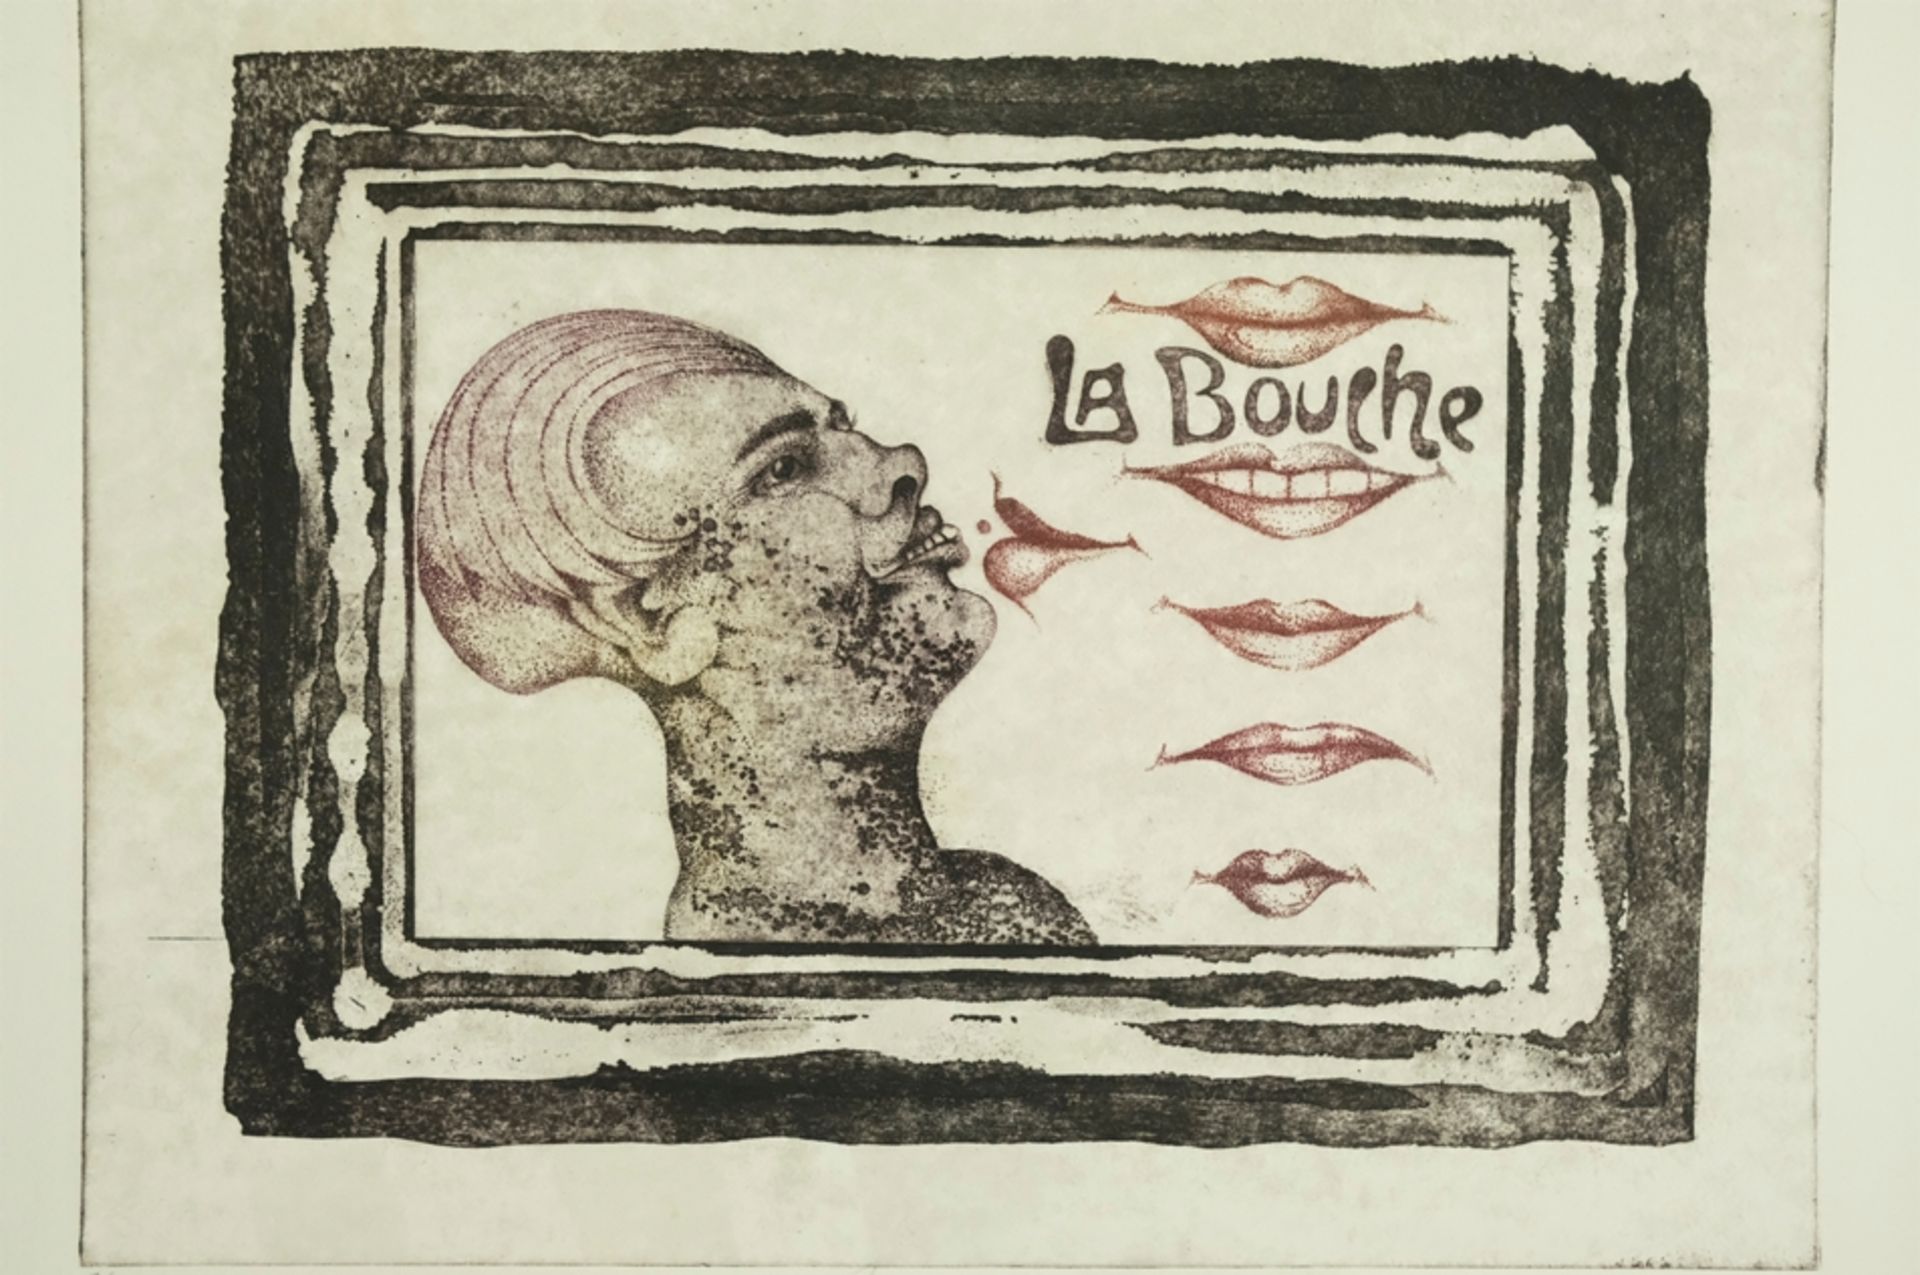 EGGERS W.P. Eberhard "La Bouche", zu Deutsch der Mund, Abbildung eines Kopfes mit vollen Lippen, da